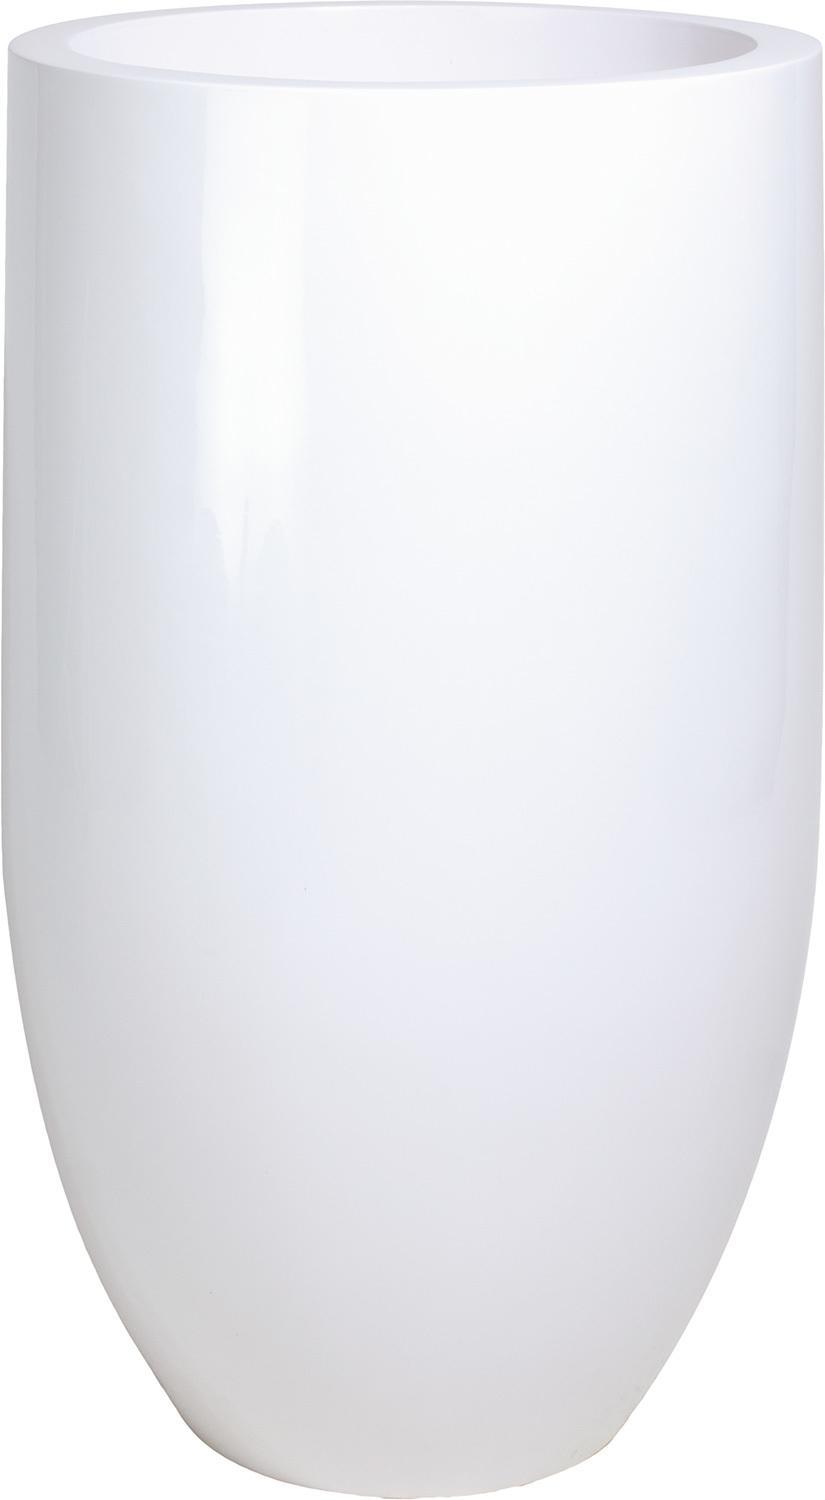 Fioriera PREMIUM PANDORA, 50/90 cm, bianca